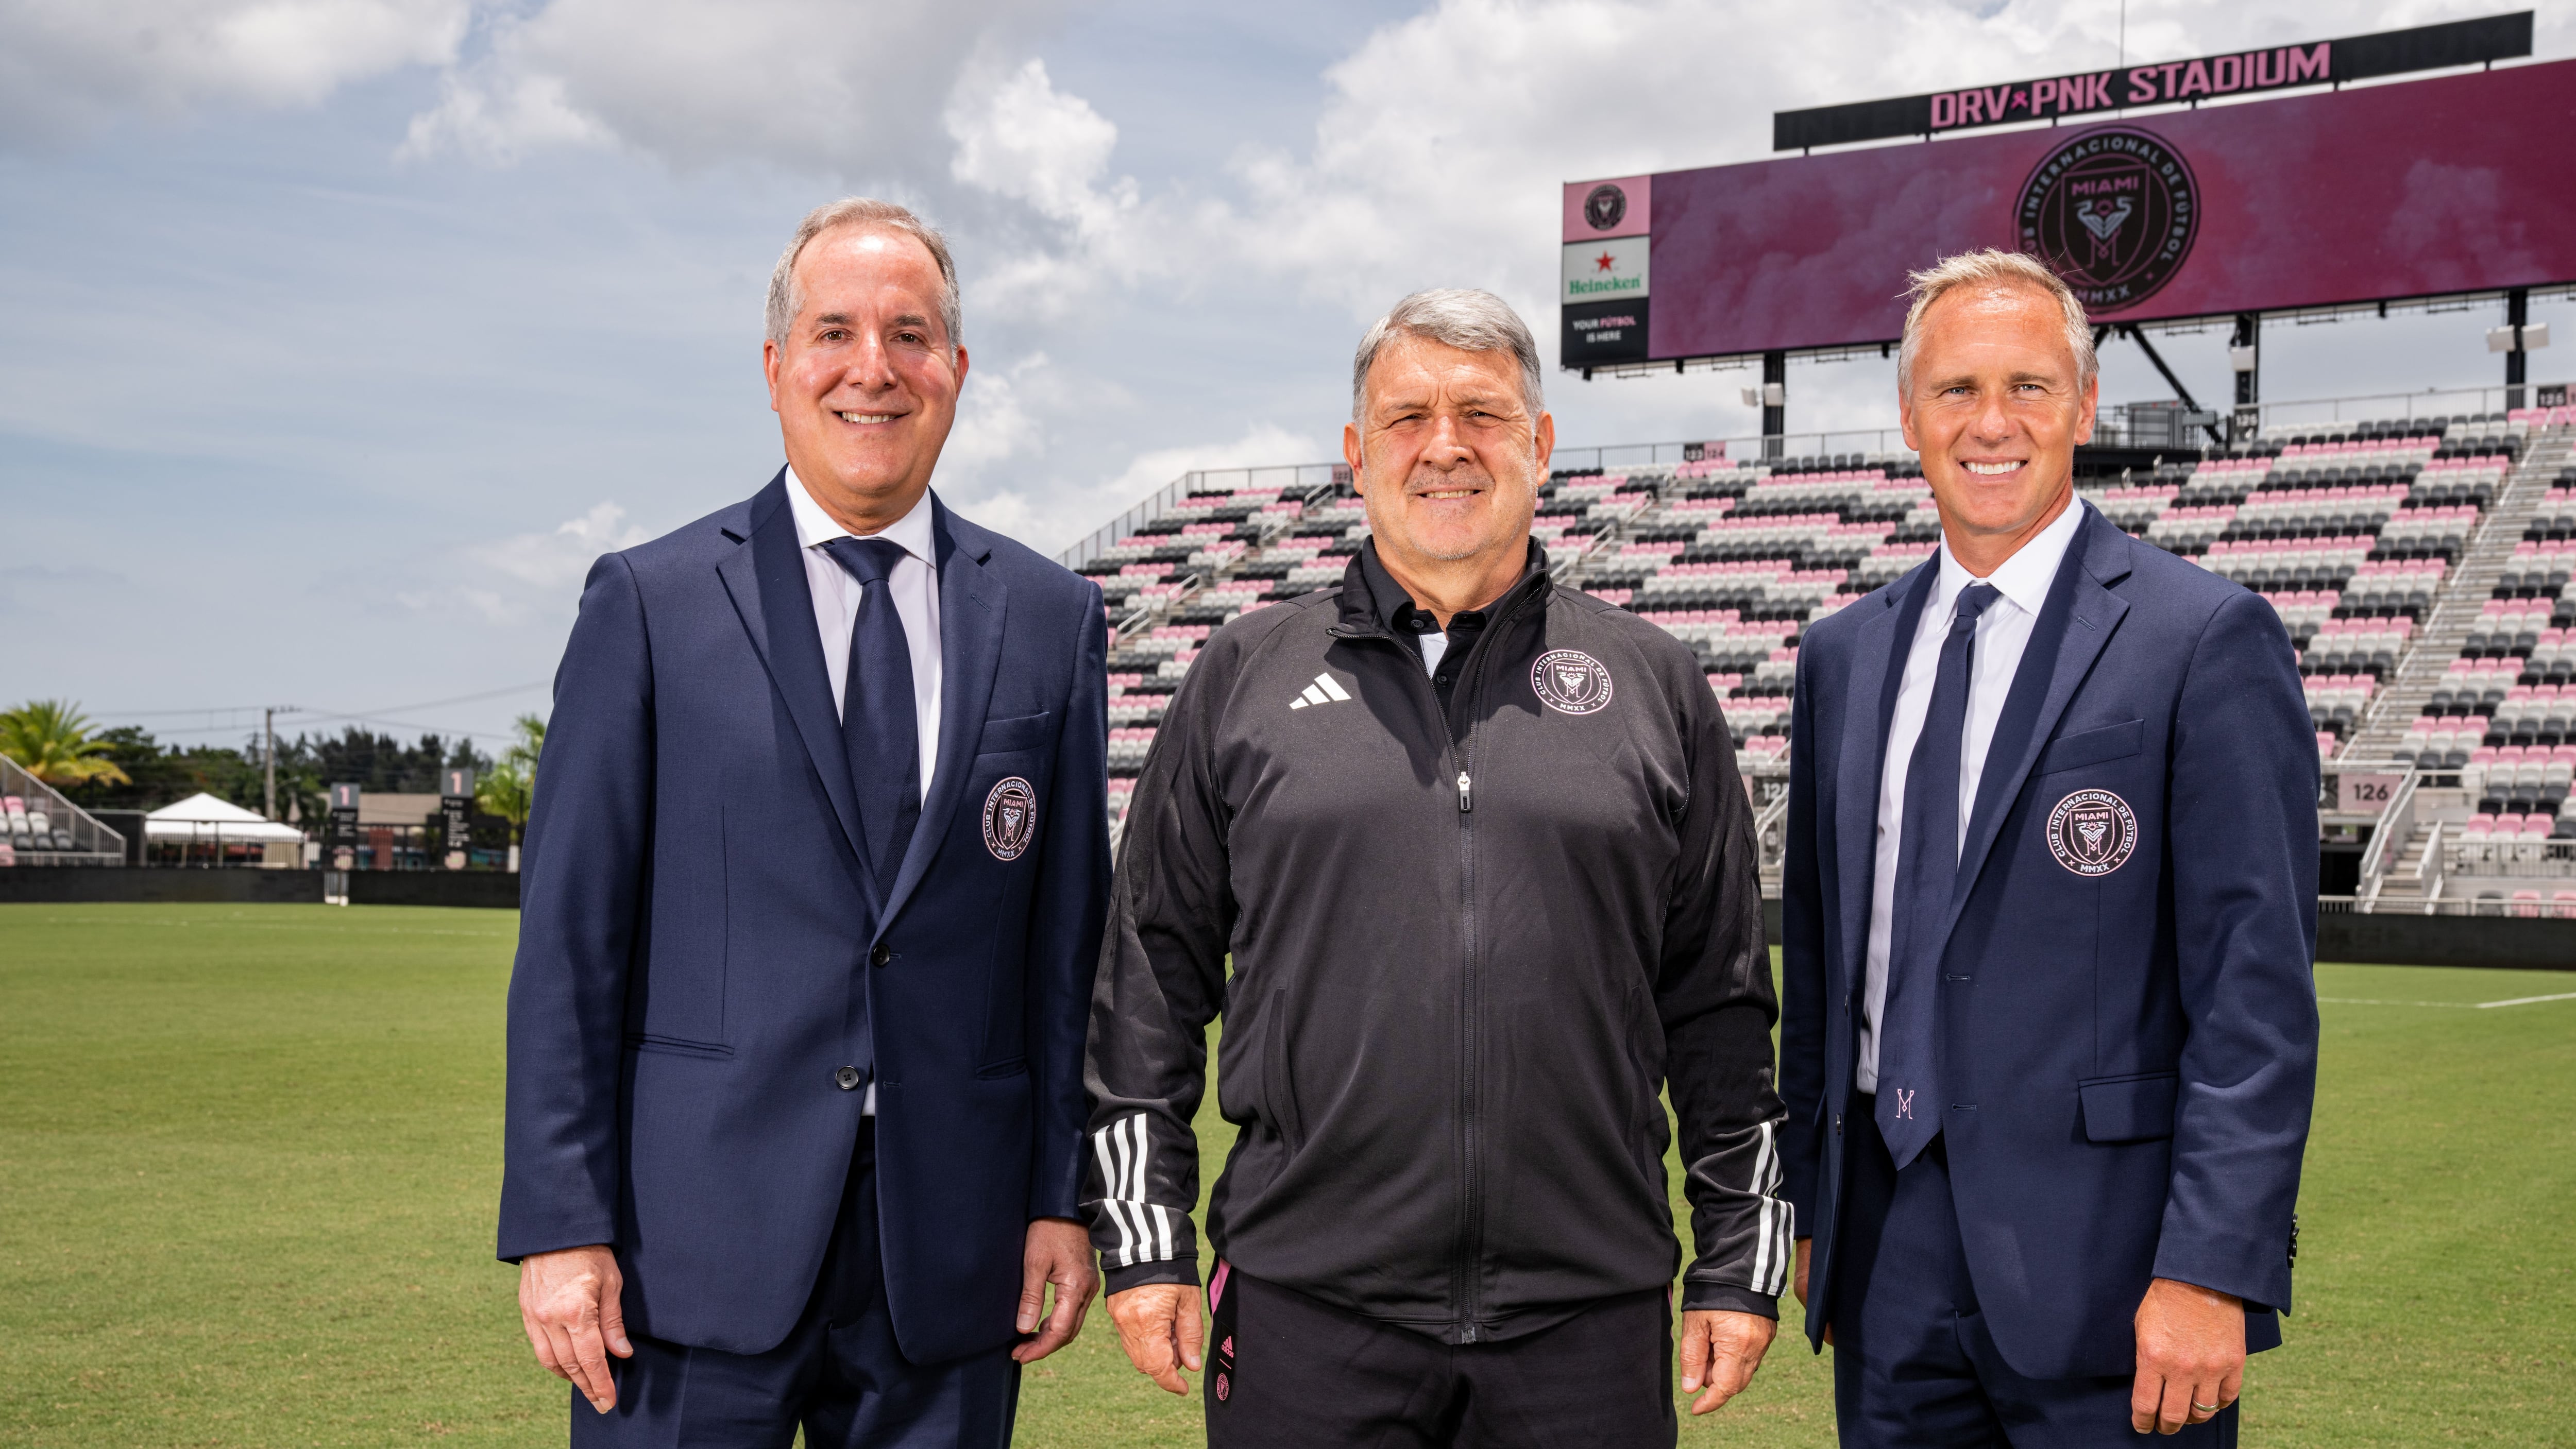 Fotografía cedida por el Inter Miami CF, que muestra a su nuevo entrenador, el argentino Gerardo 'Tata' Martino con Jorge Mas (izquierda) y el director deportivo, Chris Henderson.